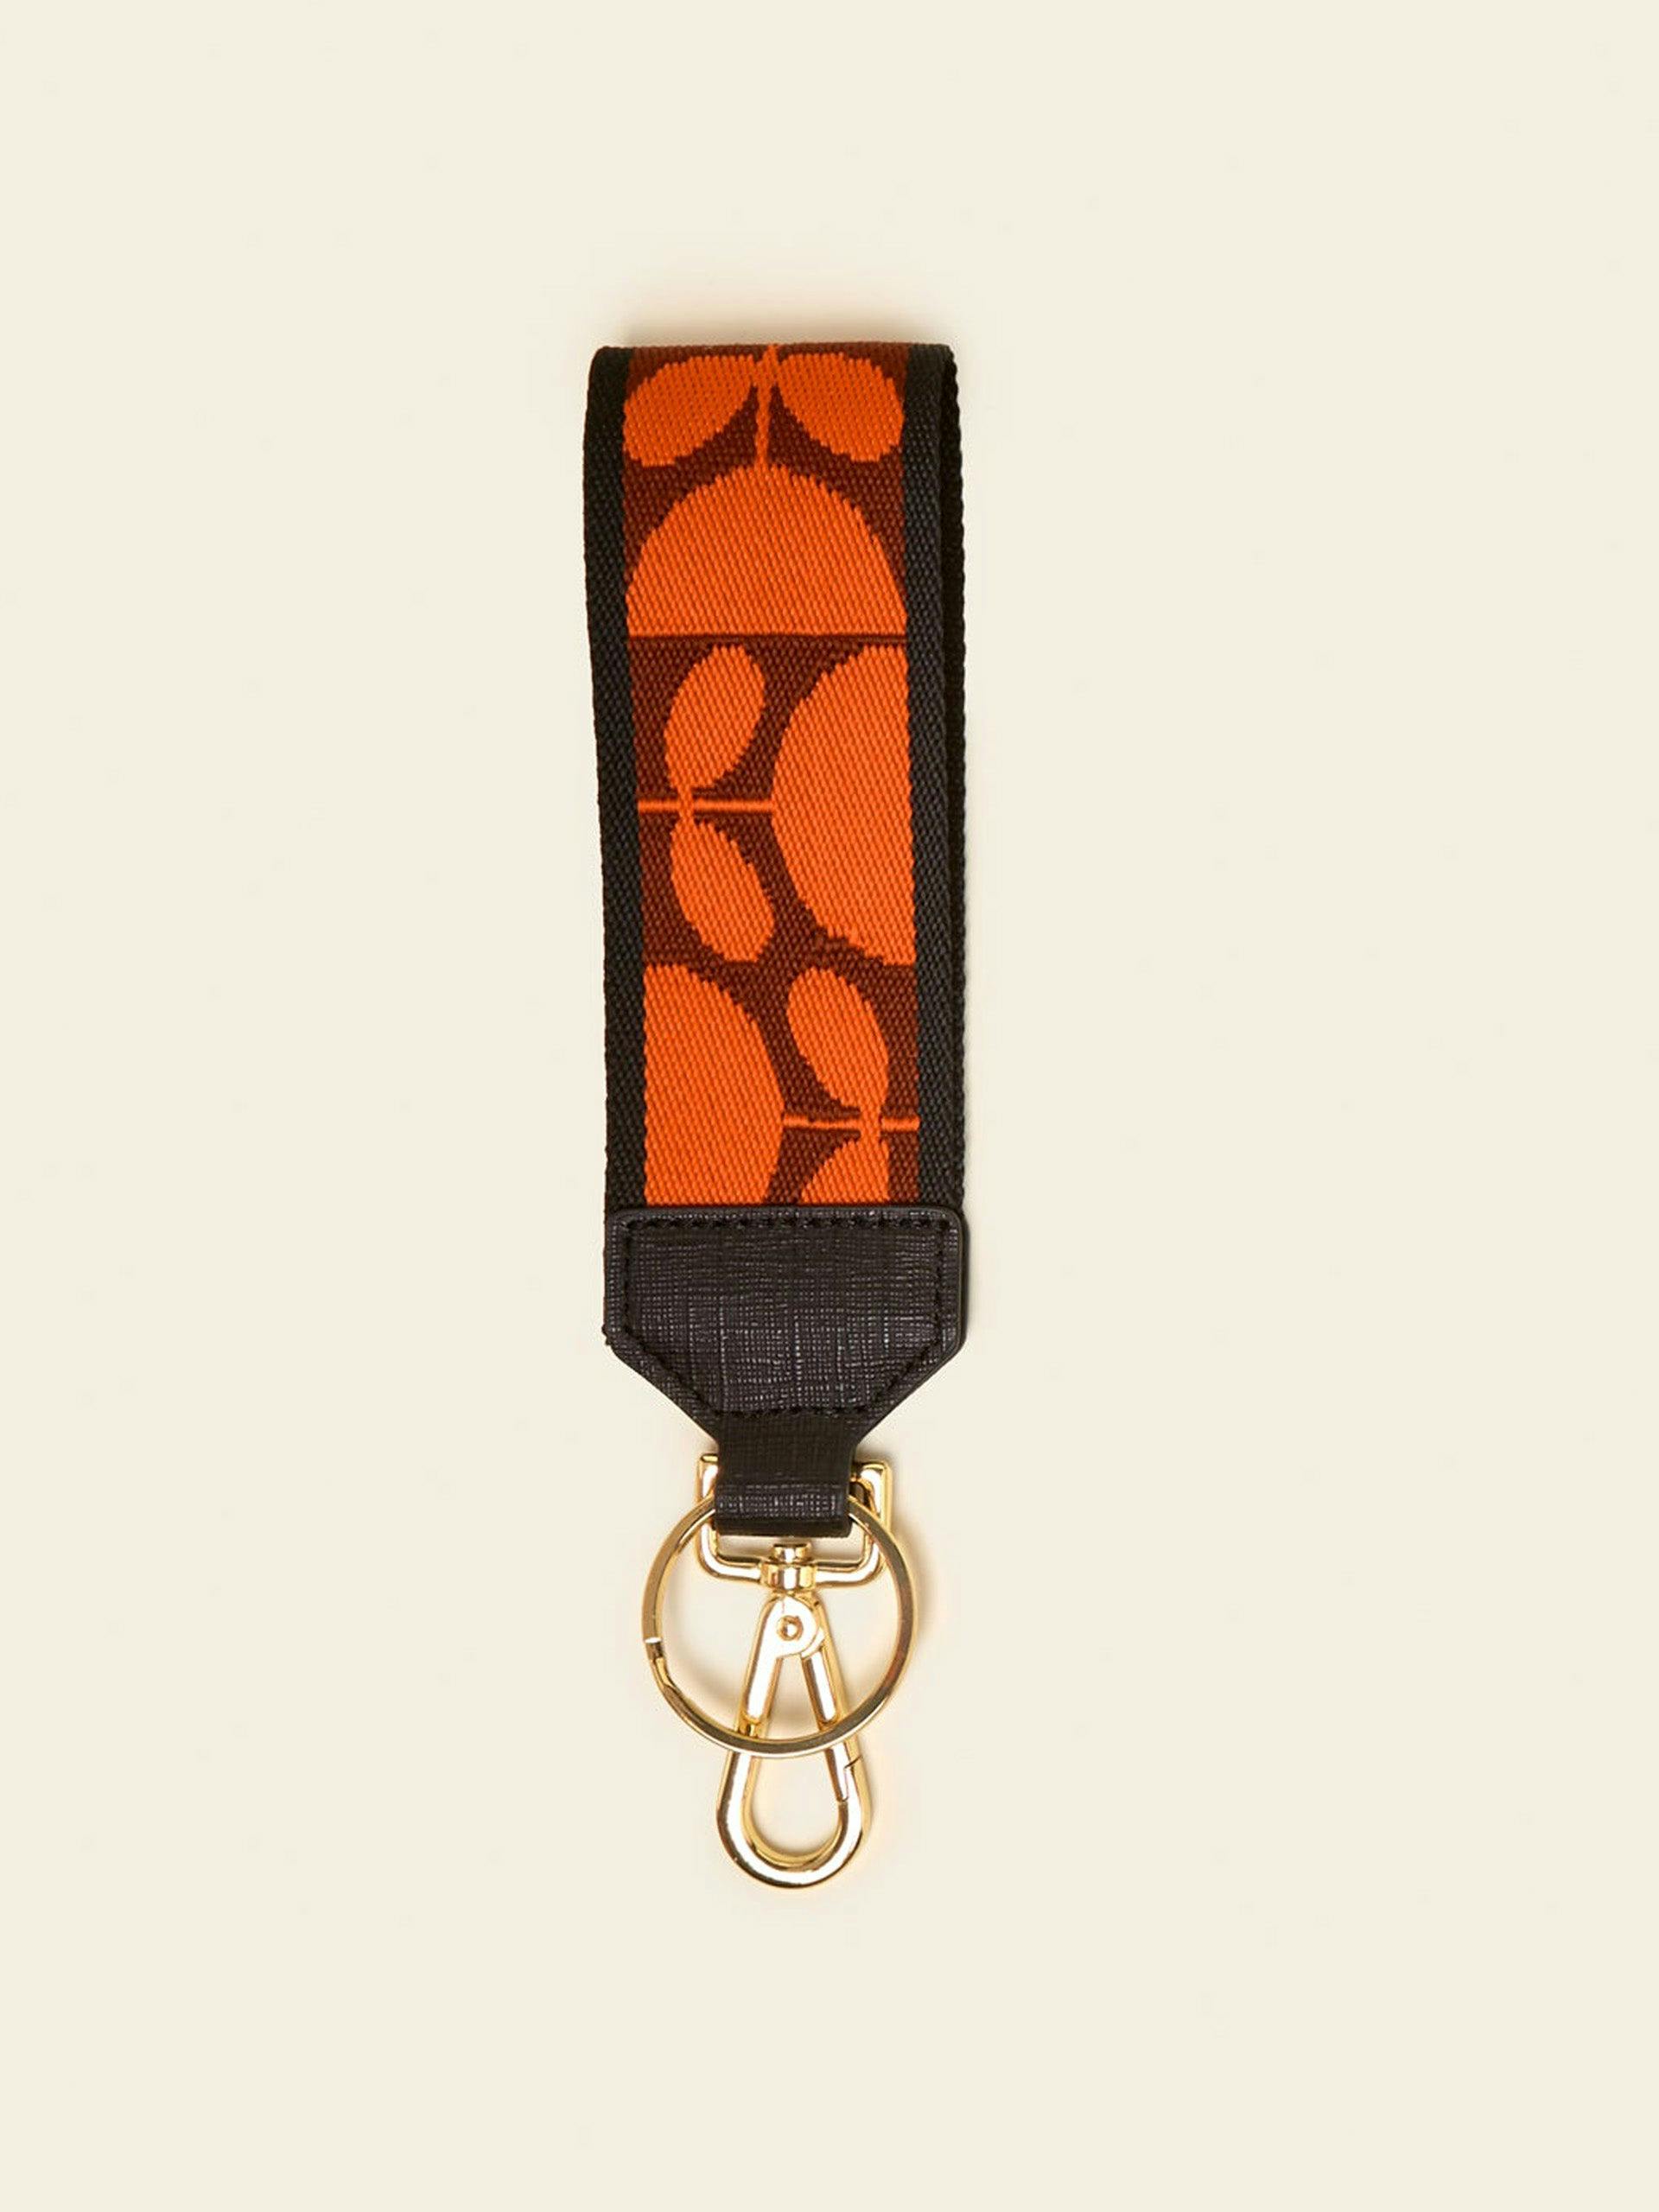 Key ring in orange